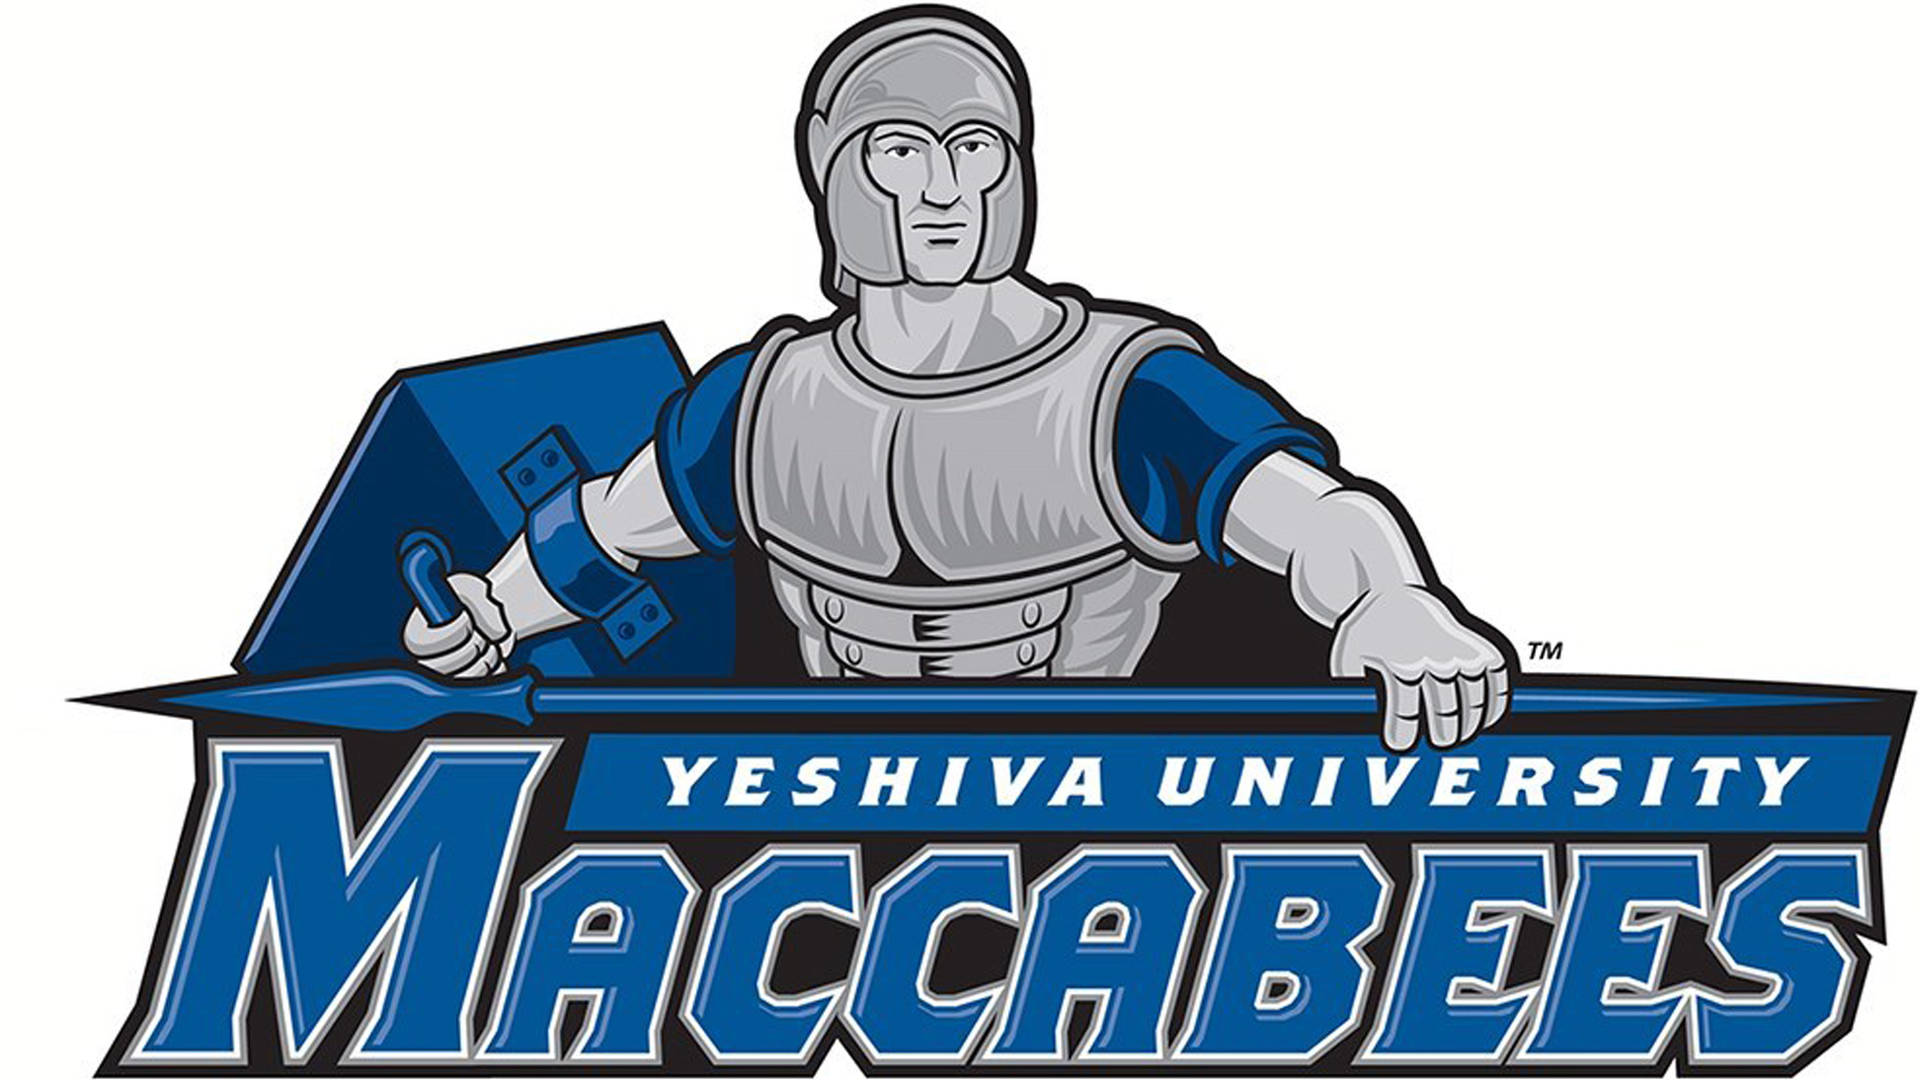 Yeshivauniversity Maccabees-logo Wallpaper